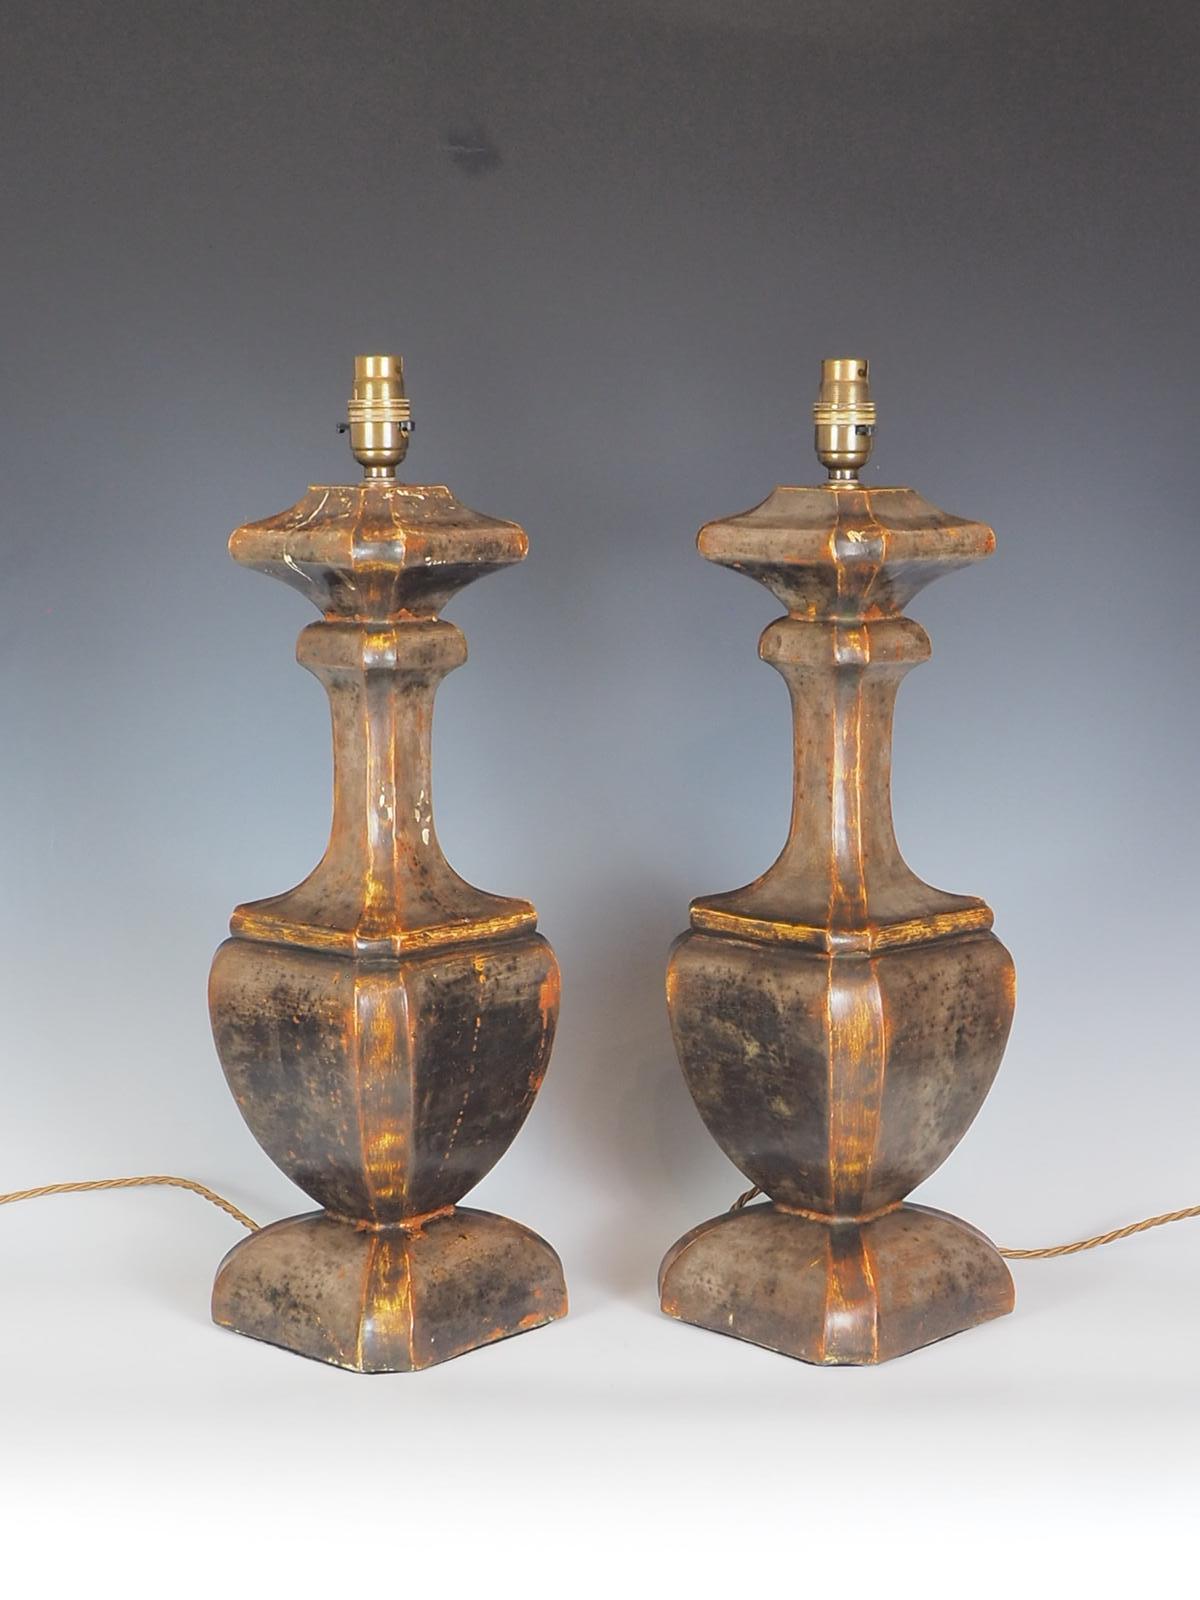 Paire d'anciennes lampes de table italiennes polychromes exsudent l'élégance avec leur forme d'urne exquise et leur captivant design peint au gesso sur bois, qui leur confère une patine unique et magnifique. Les lampes présentent une patine